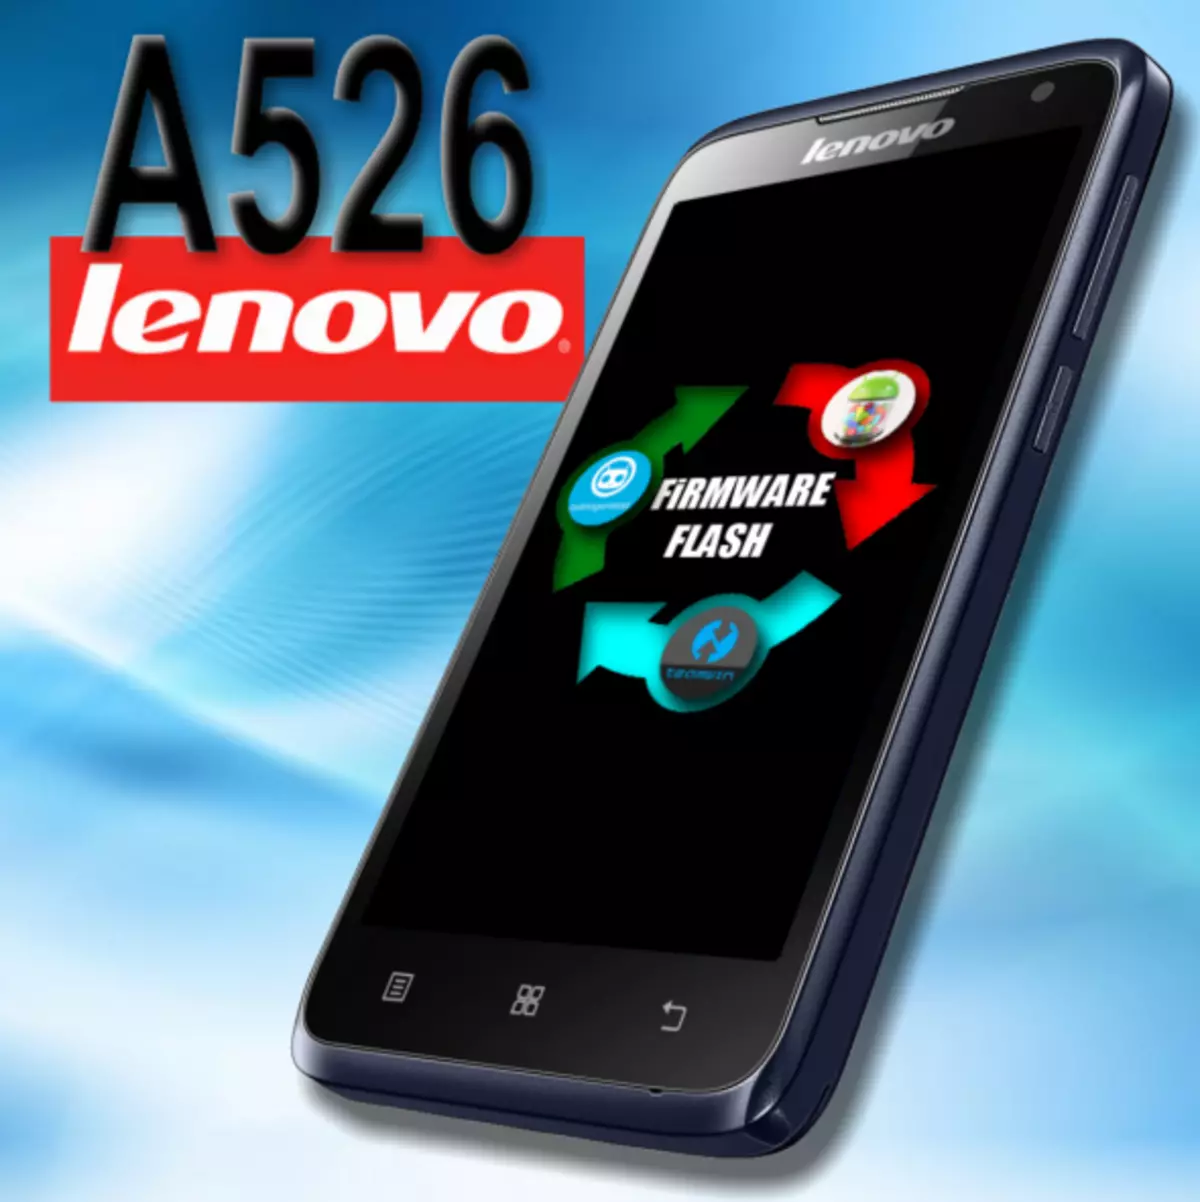 Lenovo A526 Firmware.